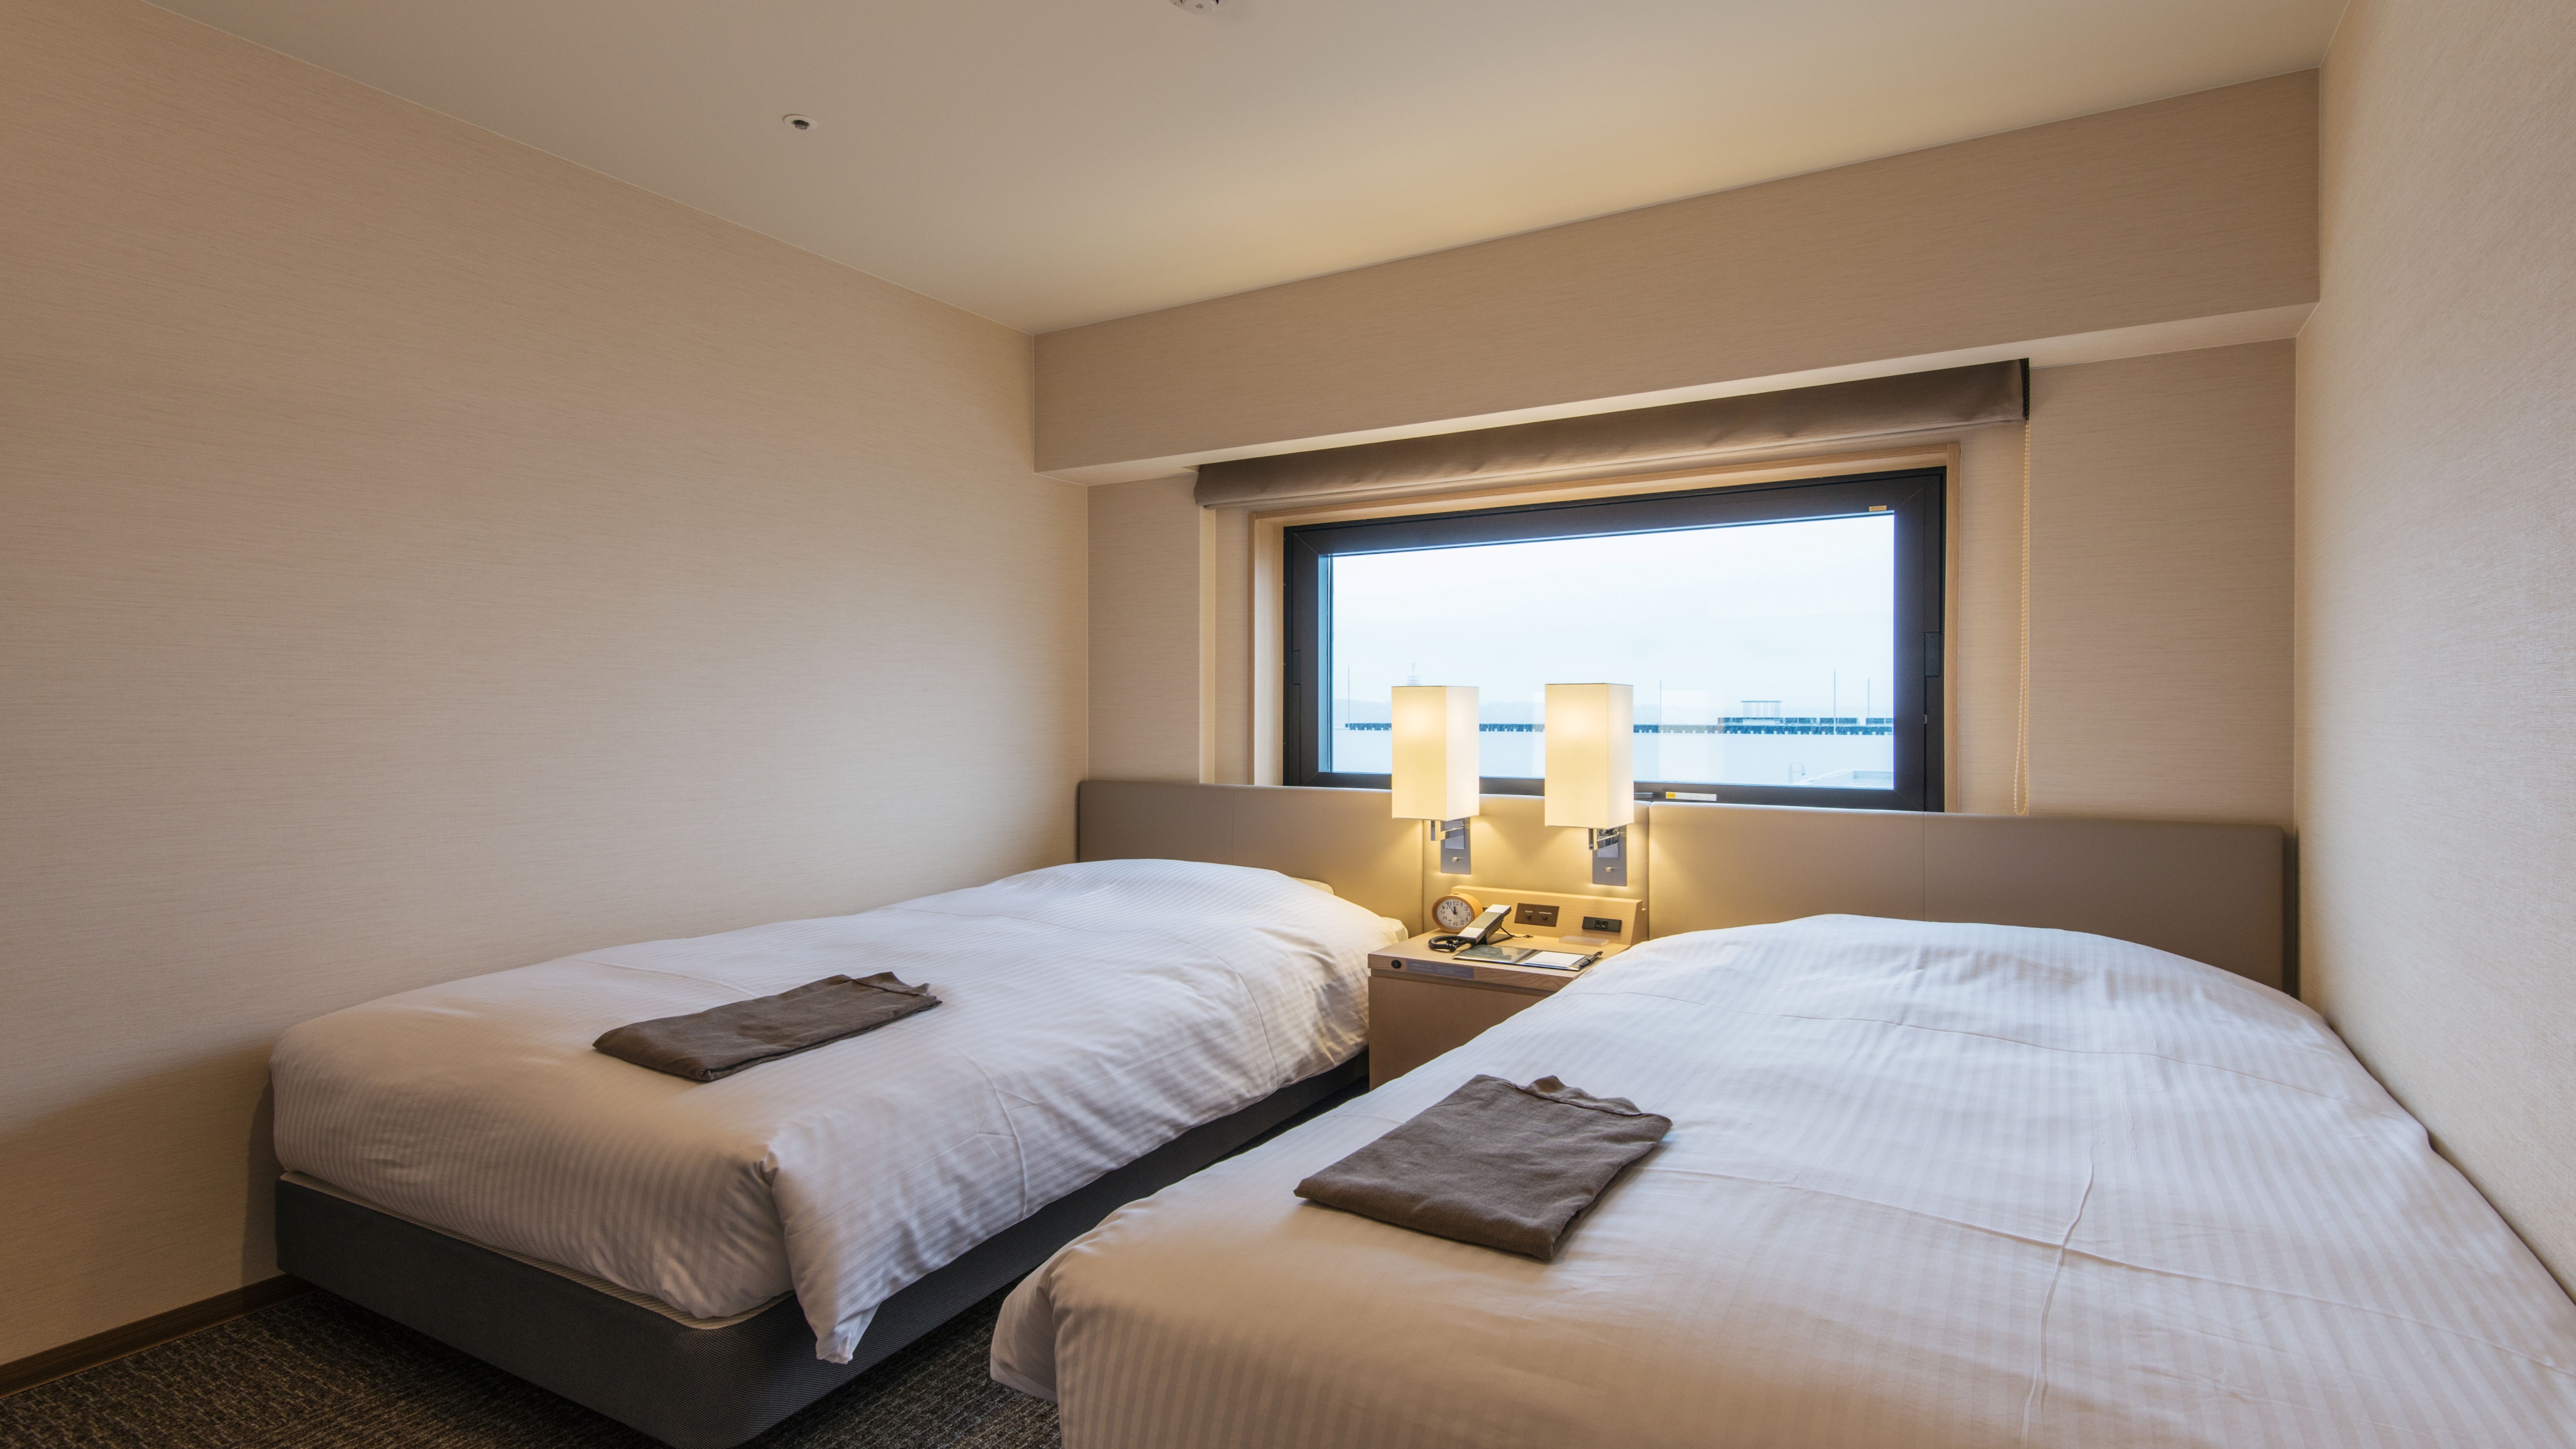 Economy Twin Room / 17㎡ (2 110cm beds)